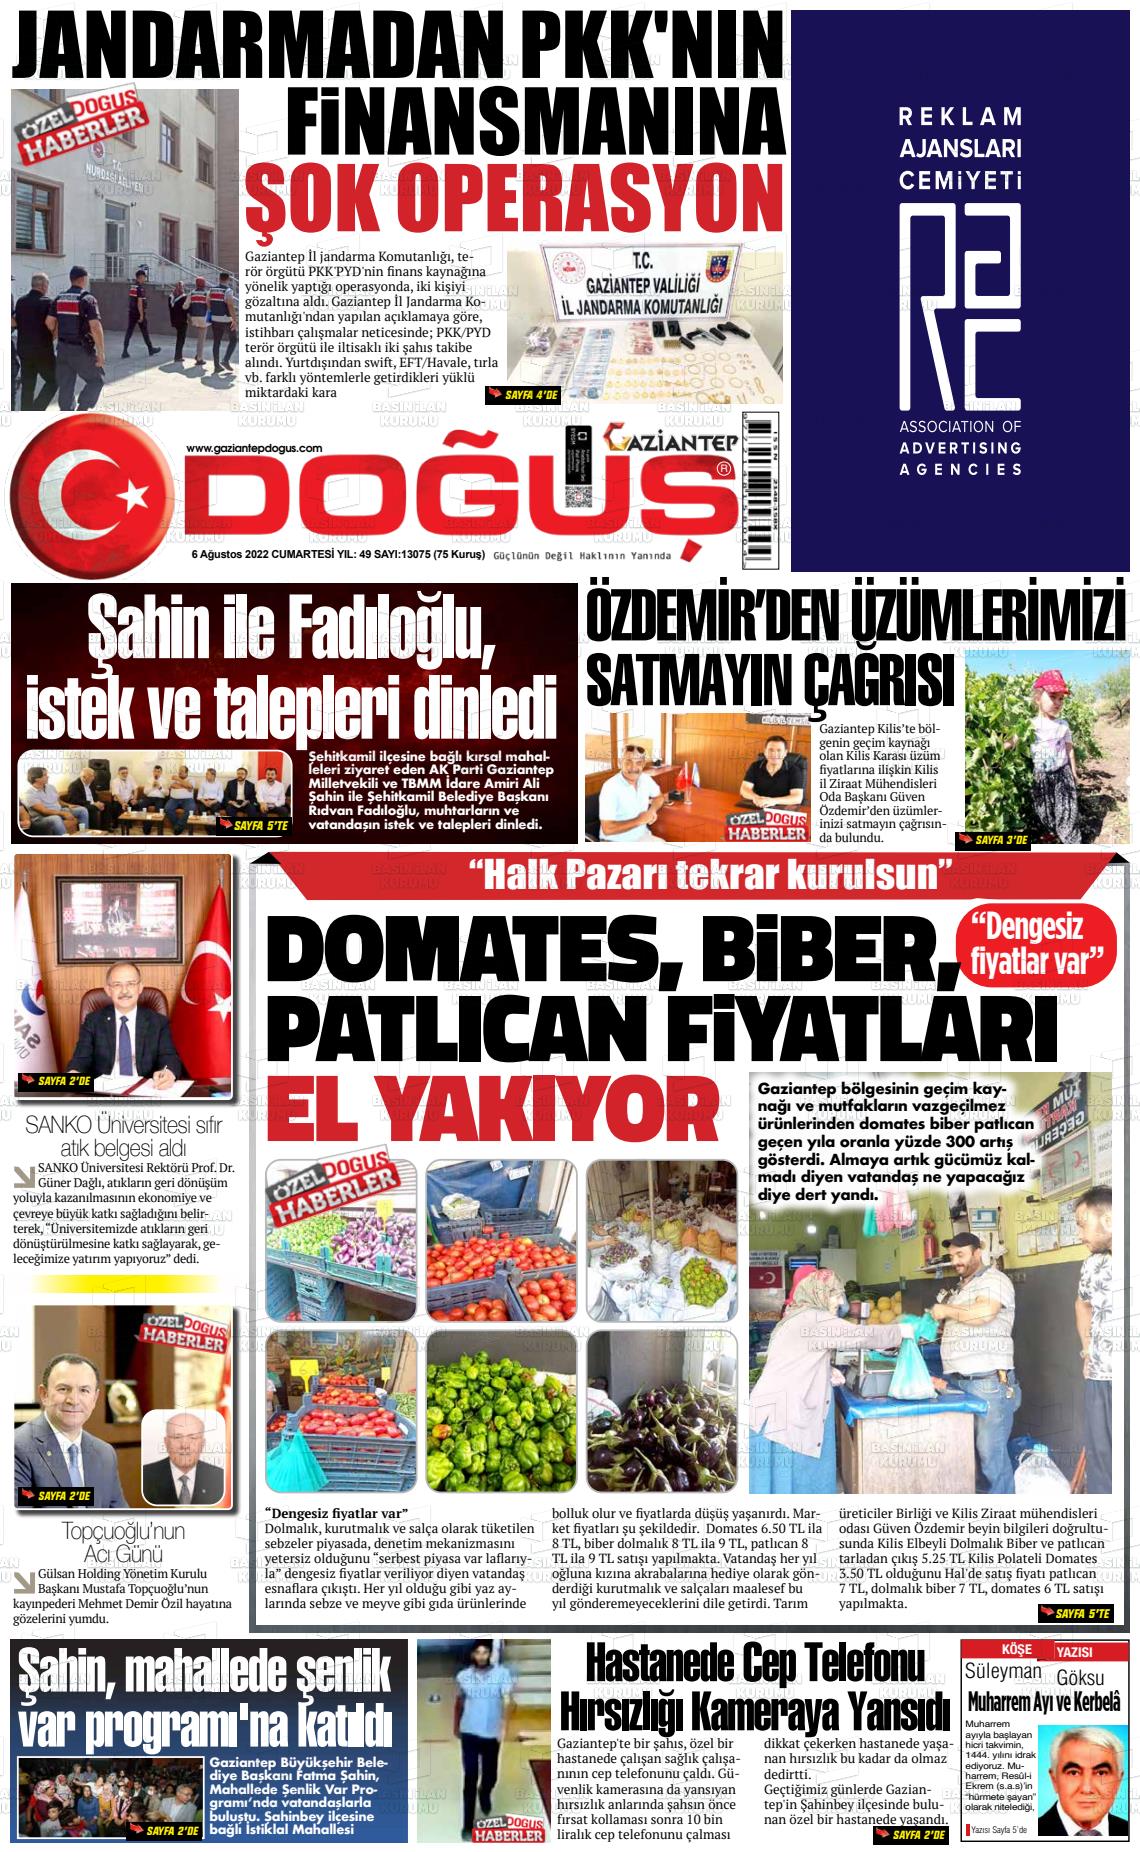 06 Ağustos 2022 Gaziantep Doğuş Gazete Manşeti